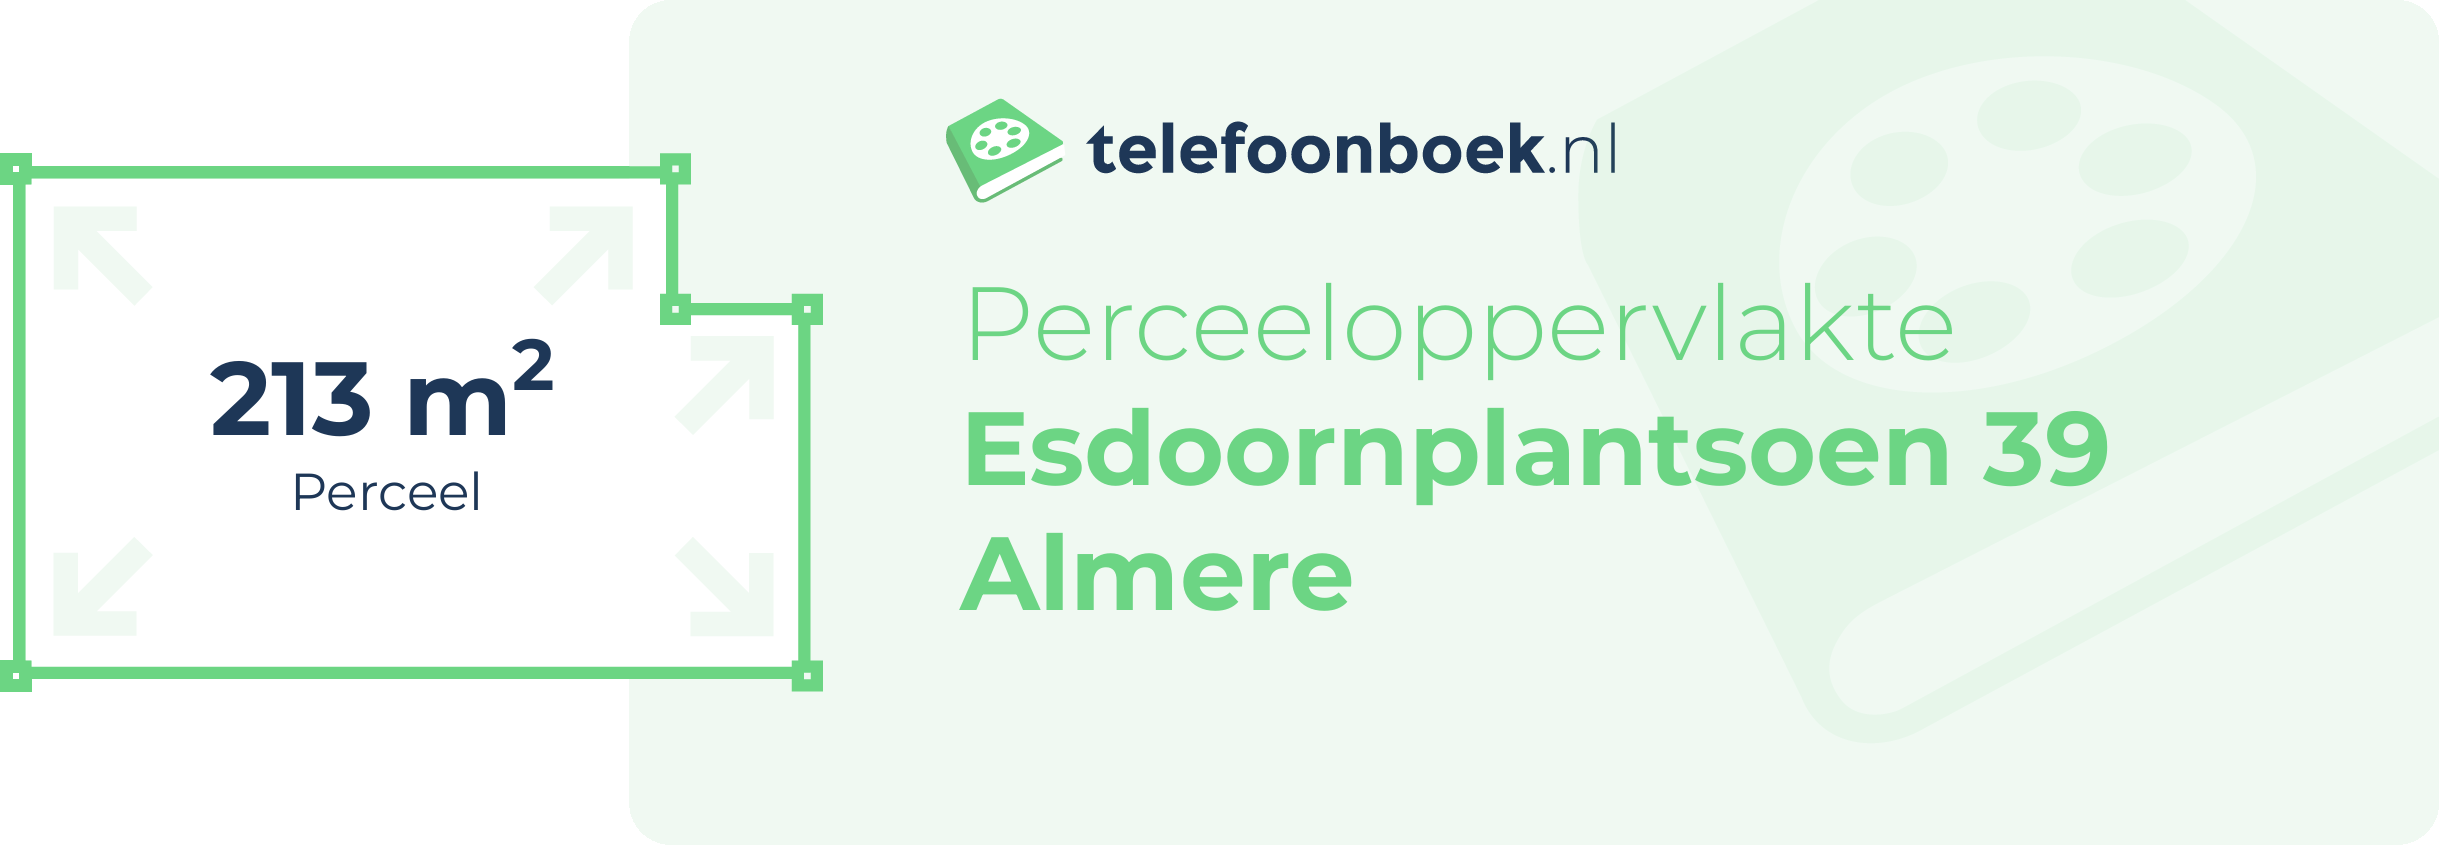 Perceeloppervlakte Esdoornplantsoen 39 Almere